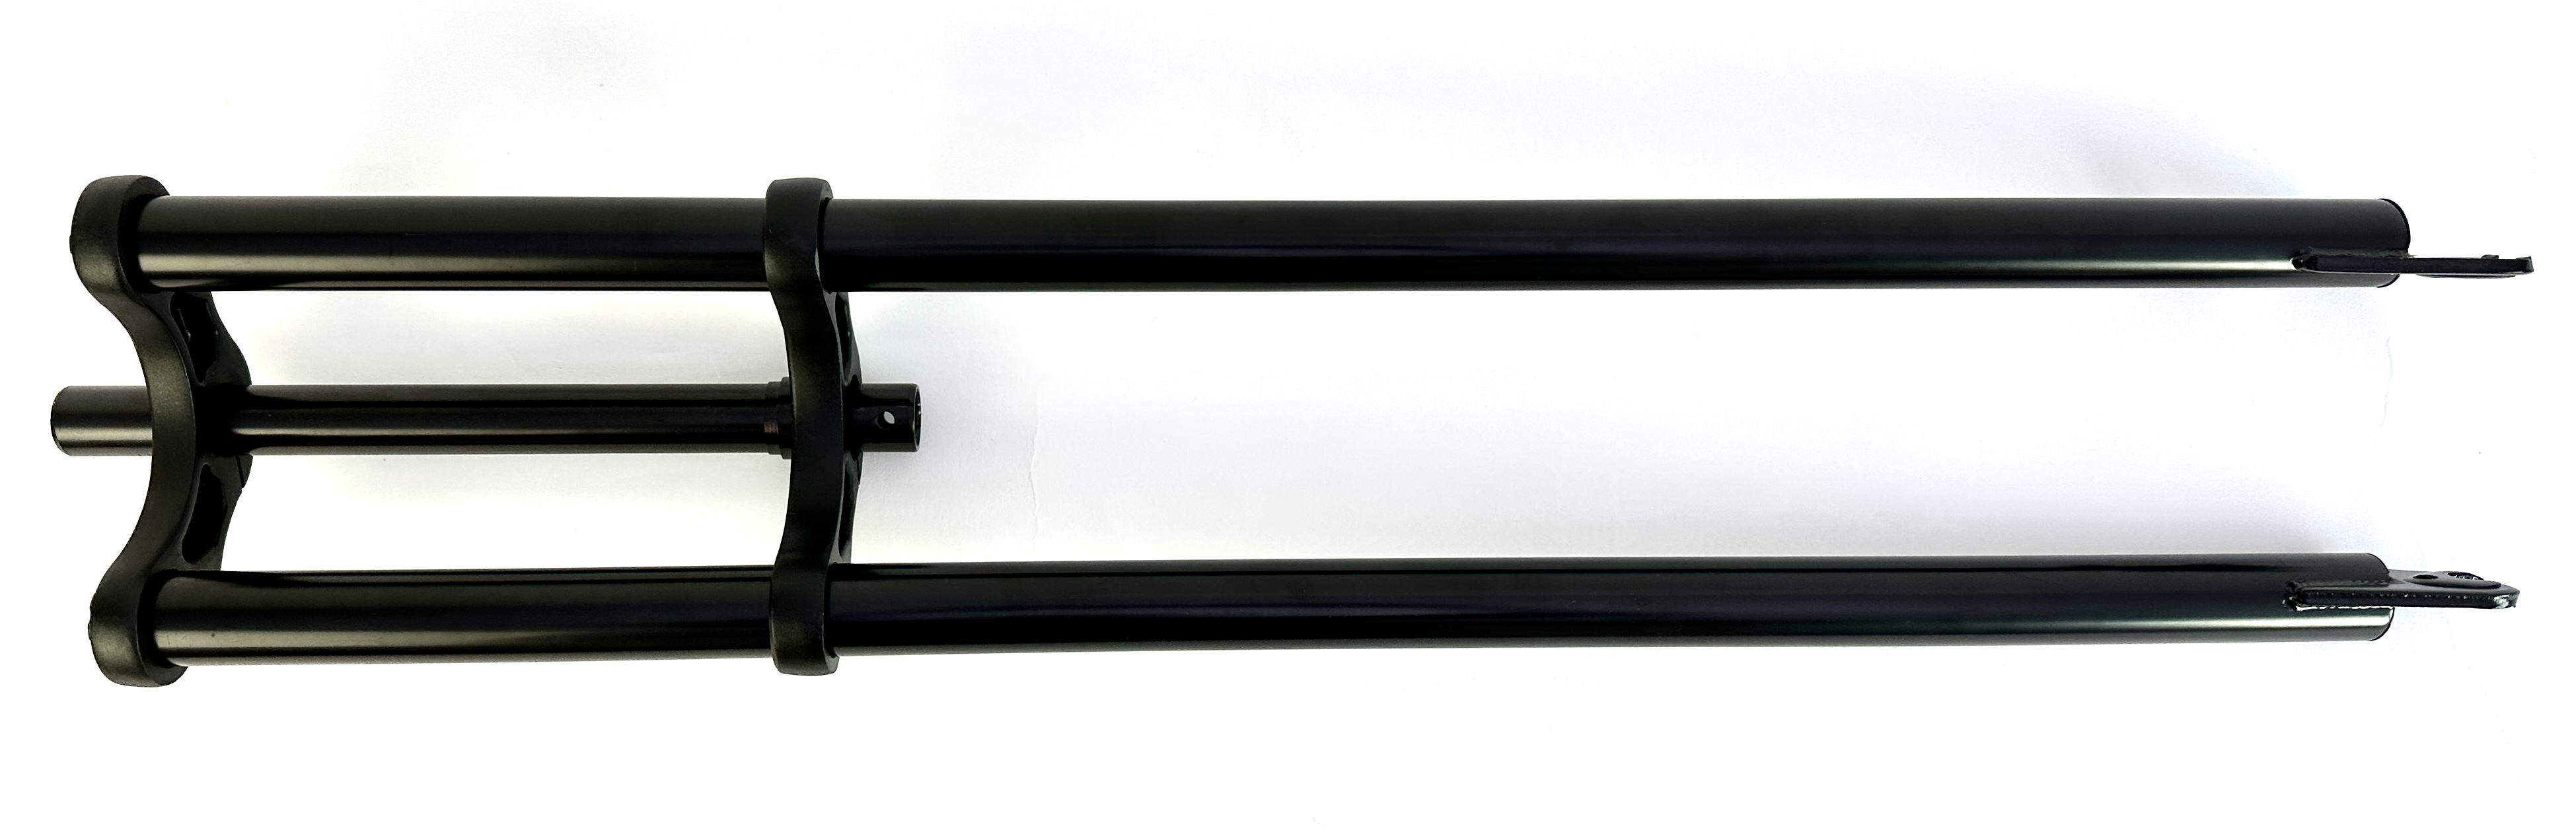 5-Horquilla de doble puente 800 mm negro eje de 1 pulgada